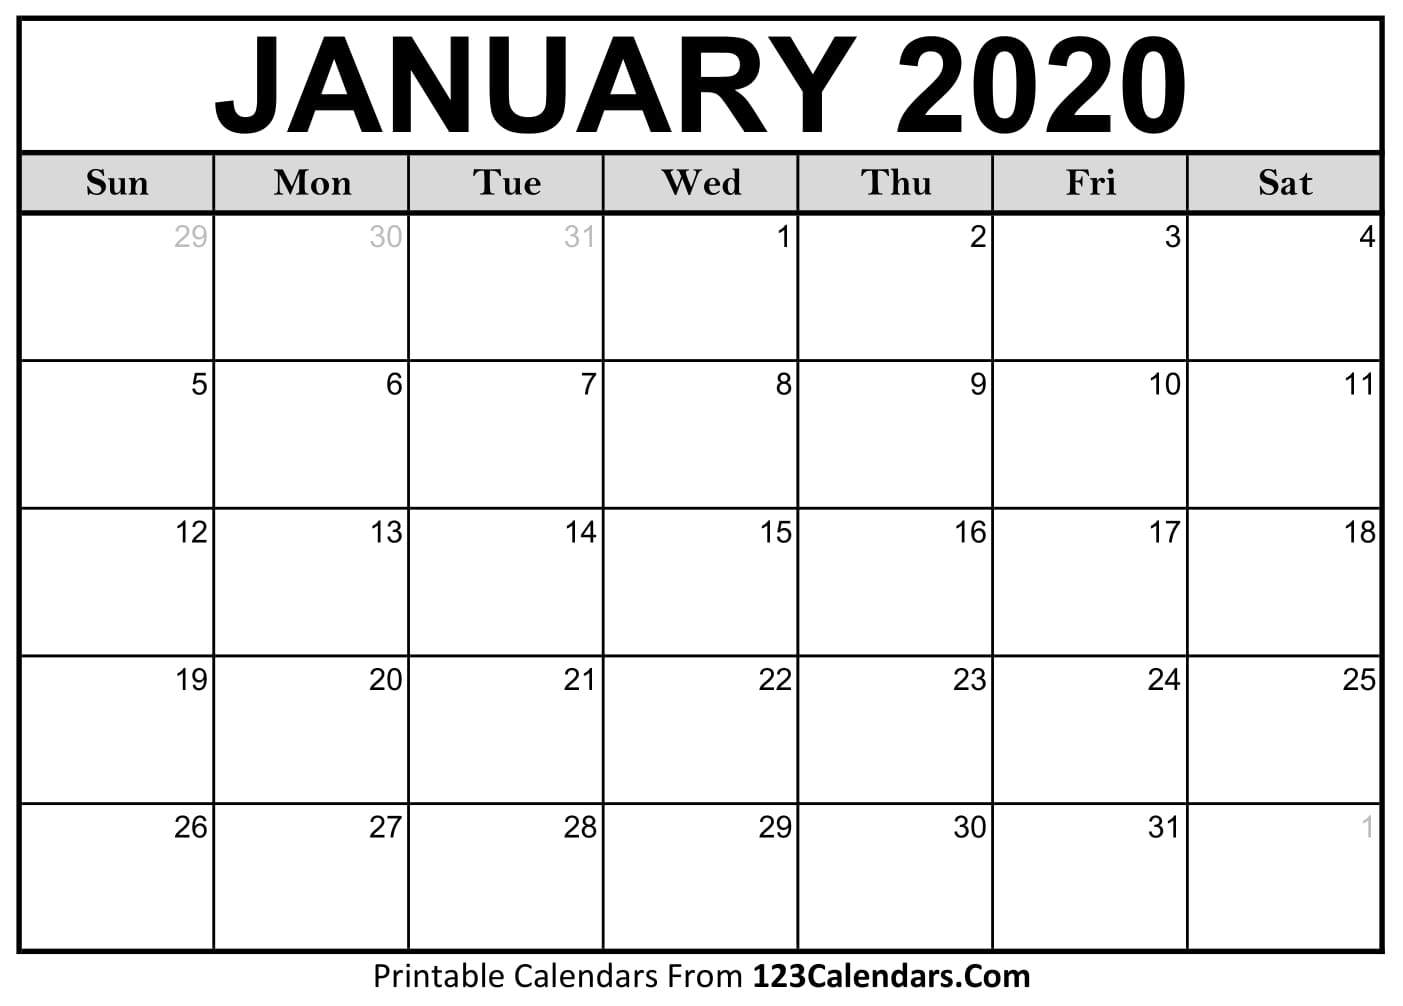 January 2020 Calendar Wallpapers - Top Những Hình Ảnh Đẹp